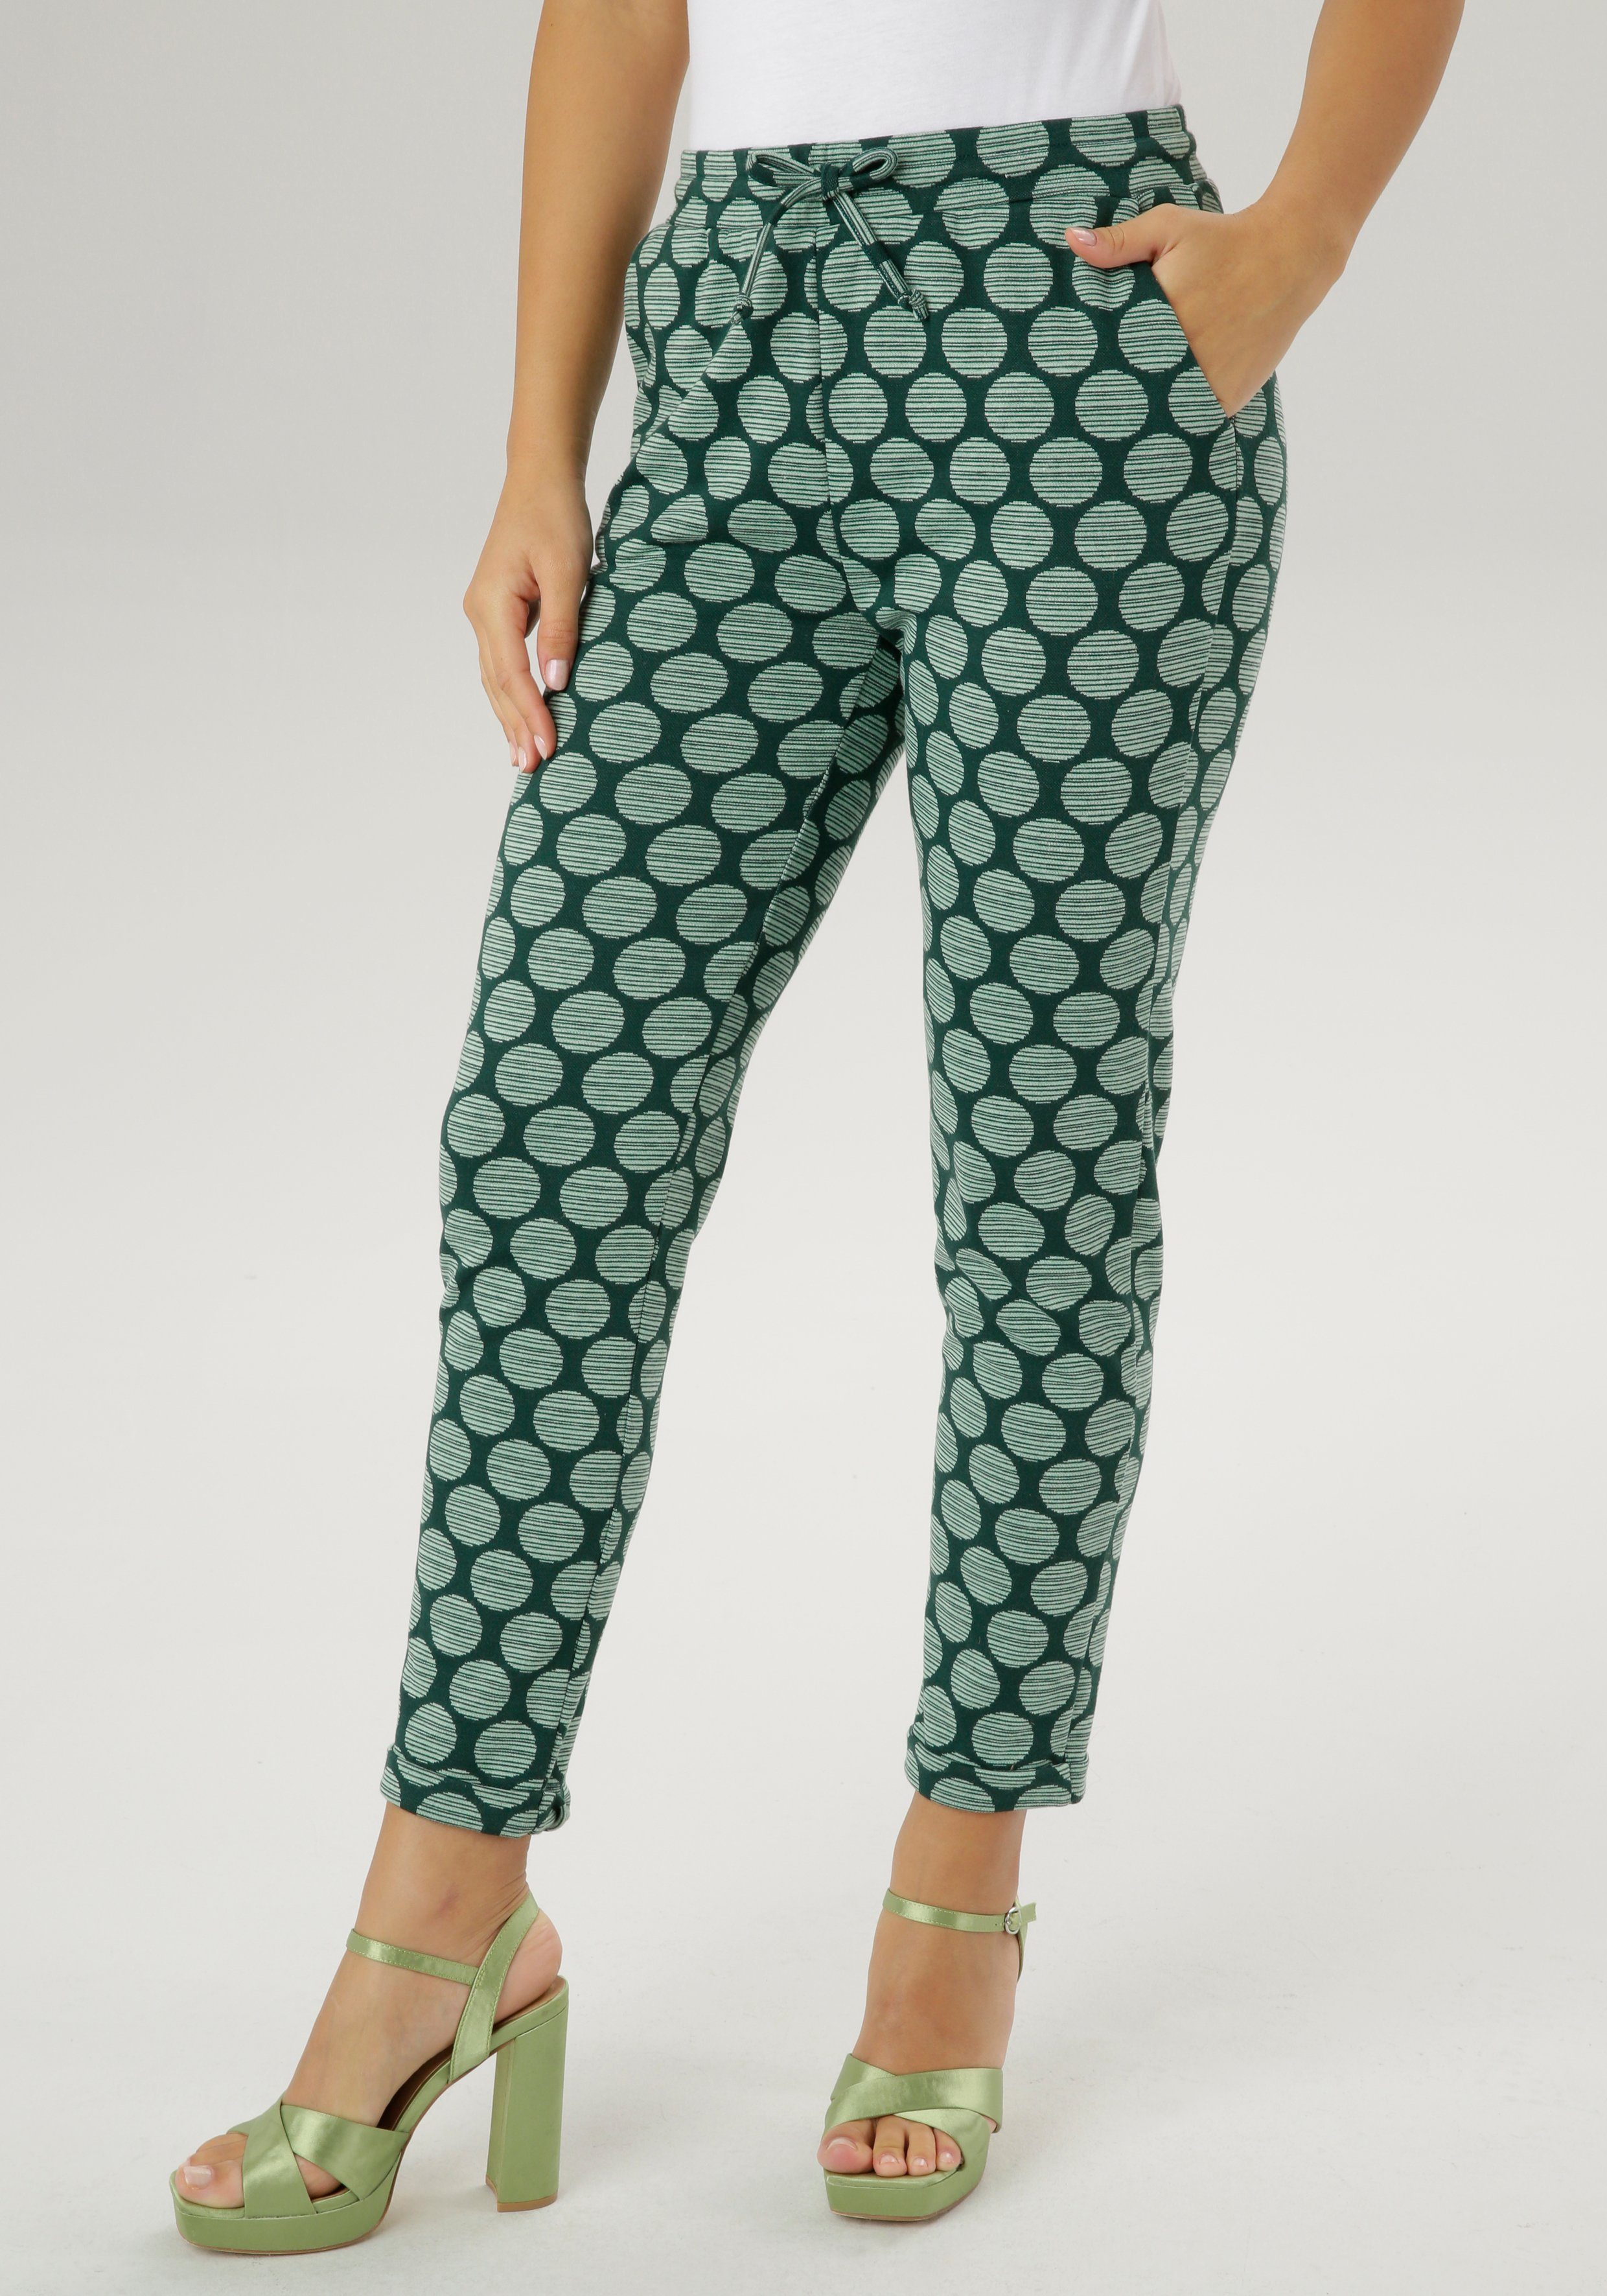 Gemusterte grüne Hosen für Damen online kaufen | OTTO | 